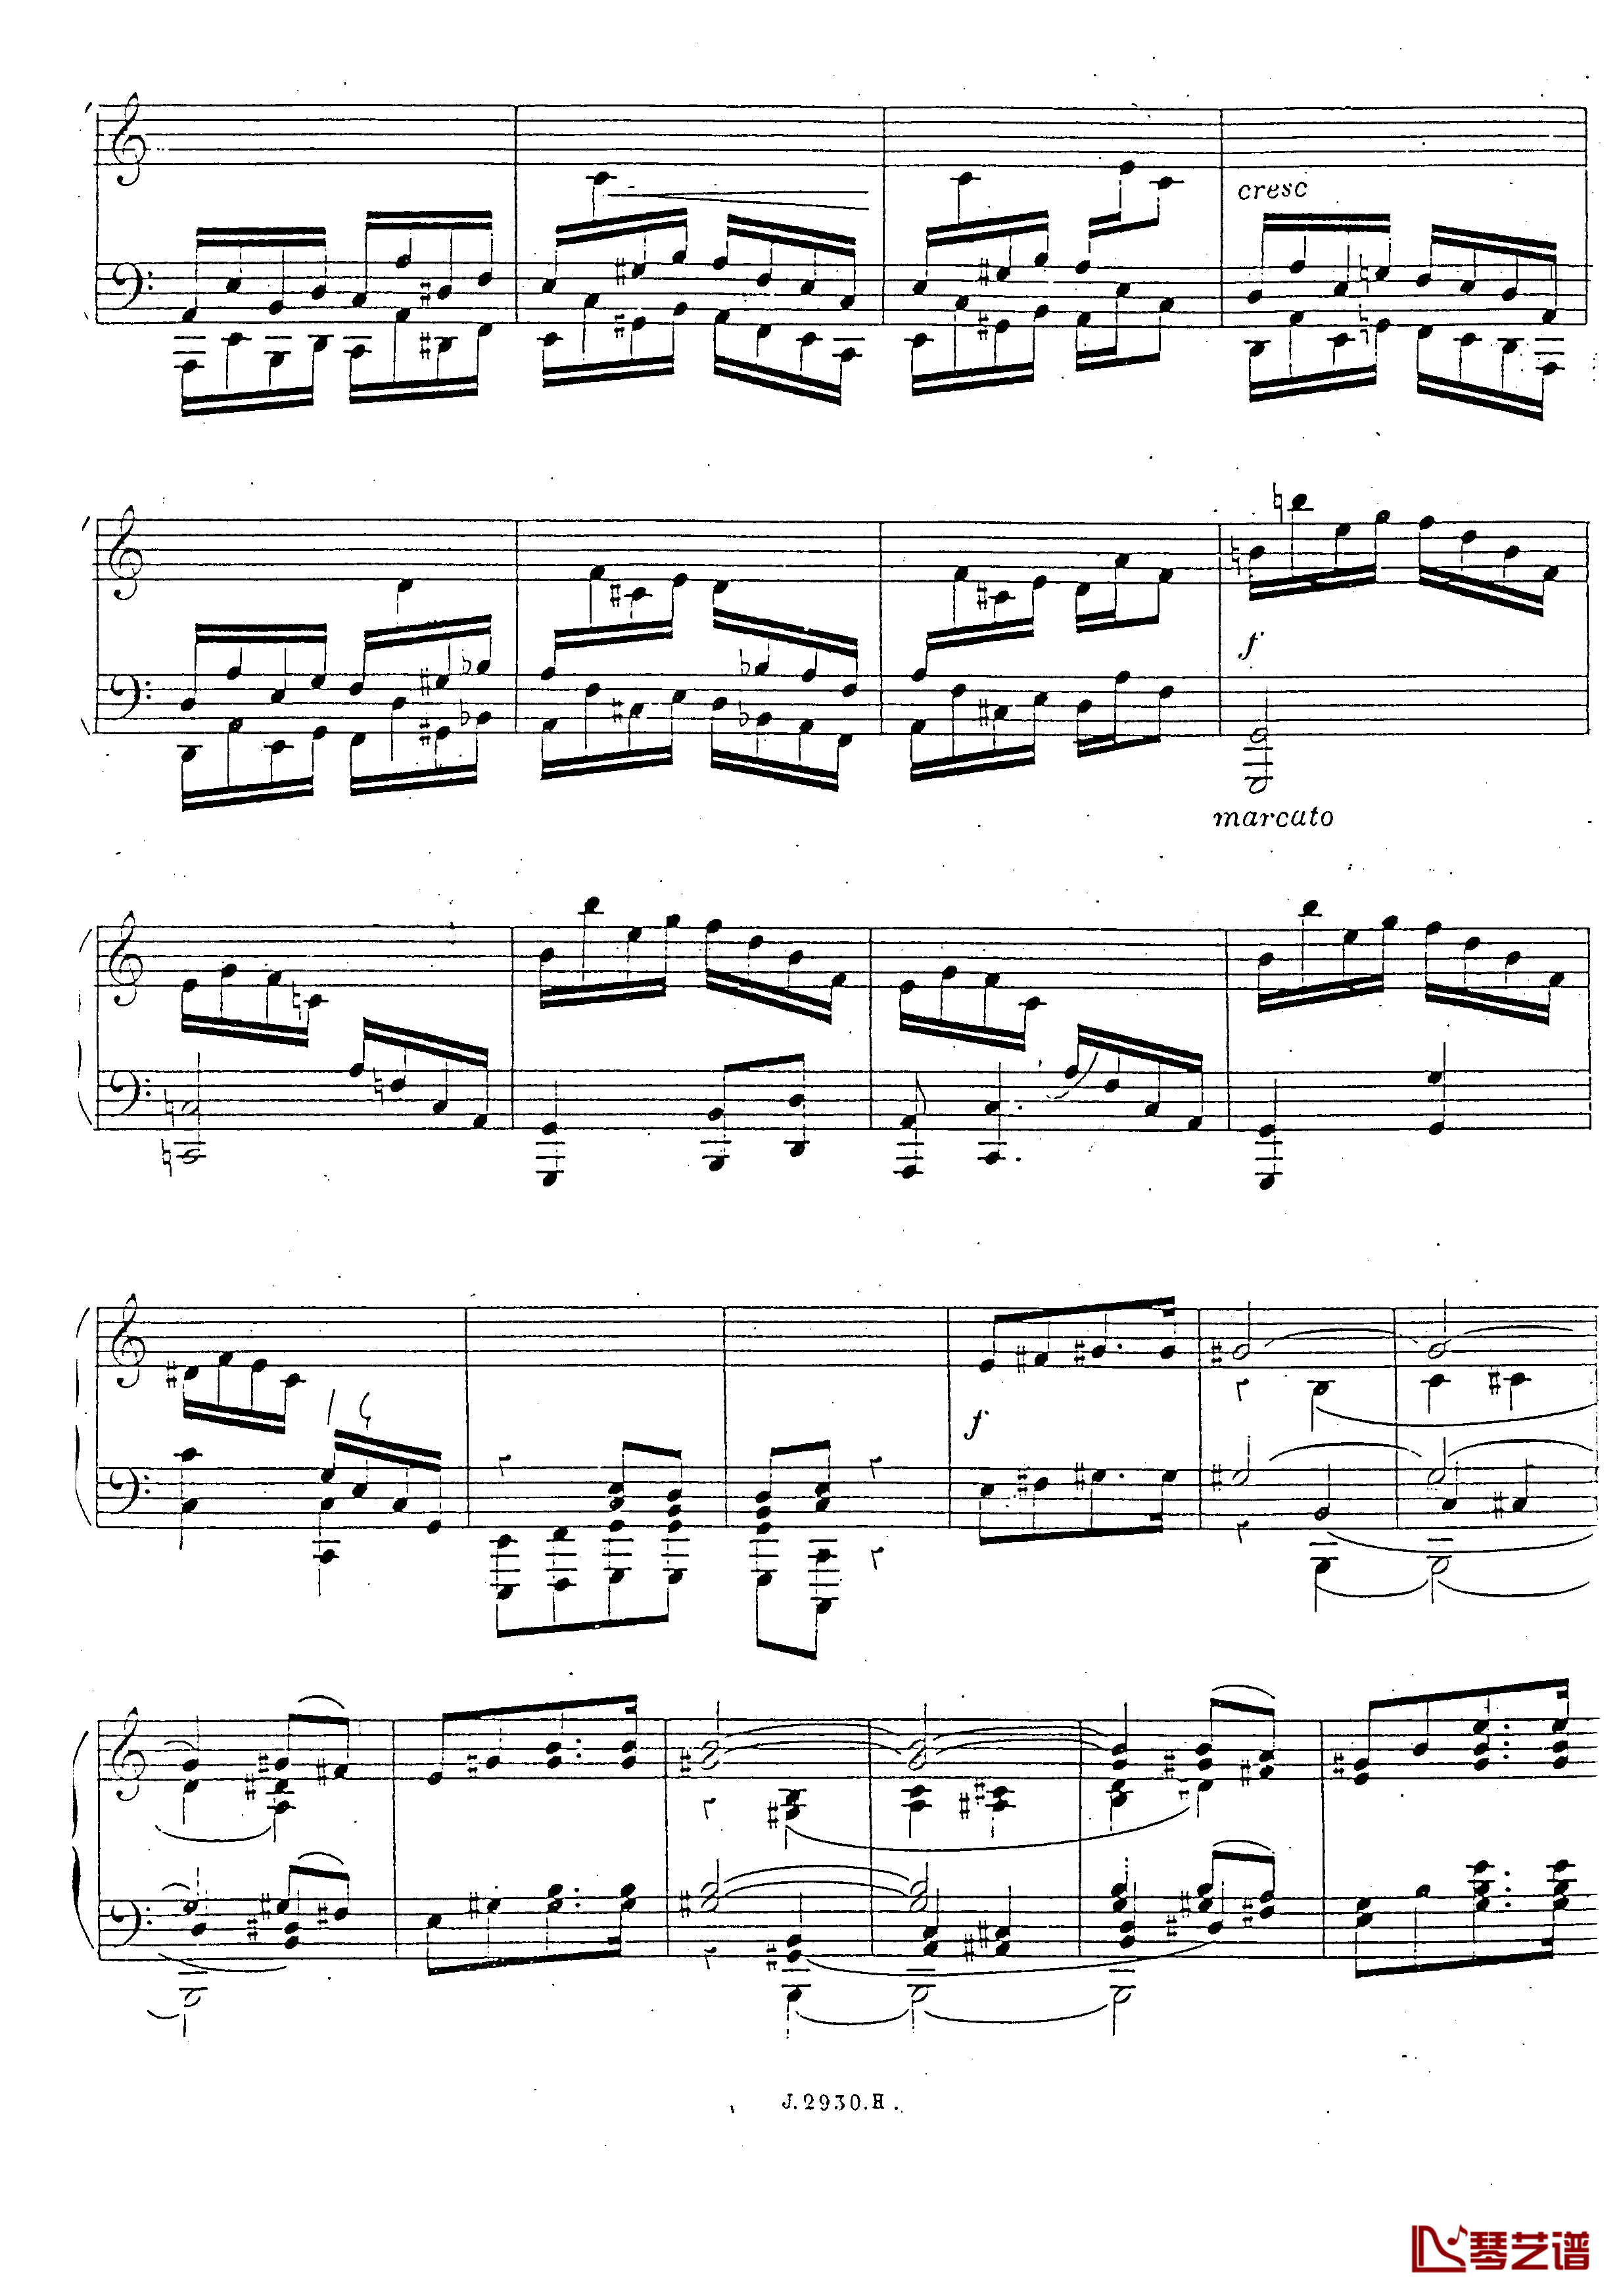 a小调第四钢琴奏鸣曲钢琴谱-安东 鲁宾斯坦- Op.10040